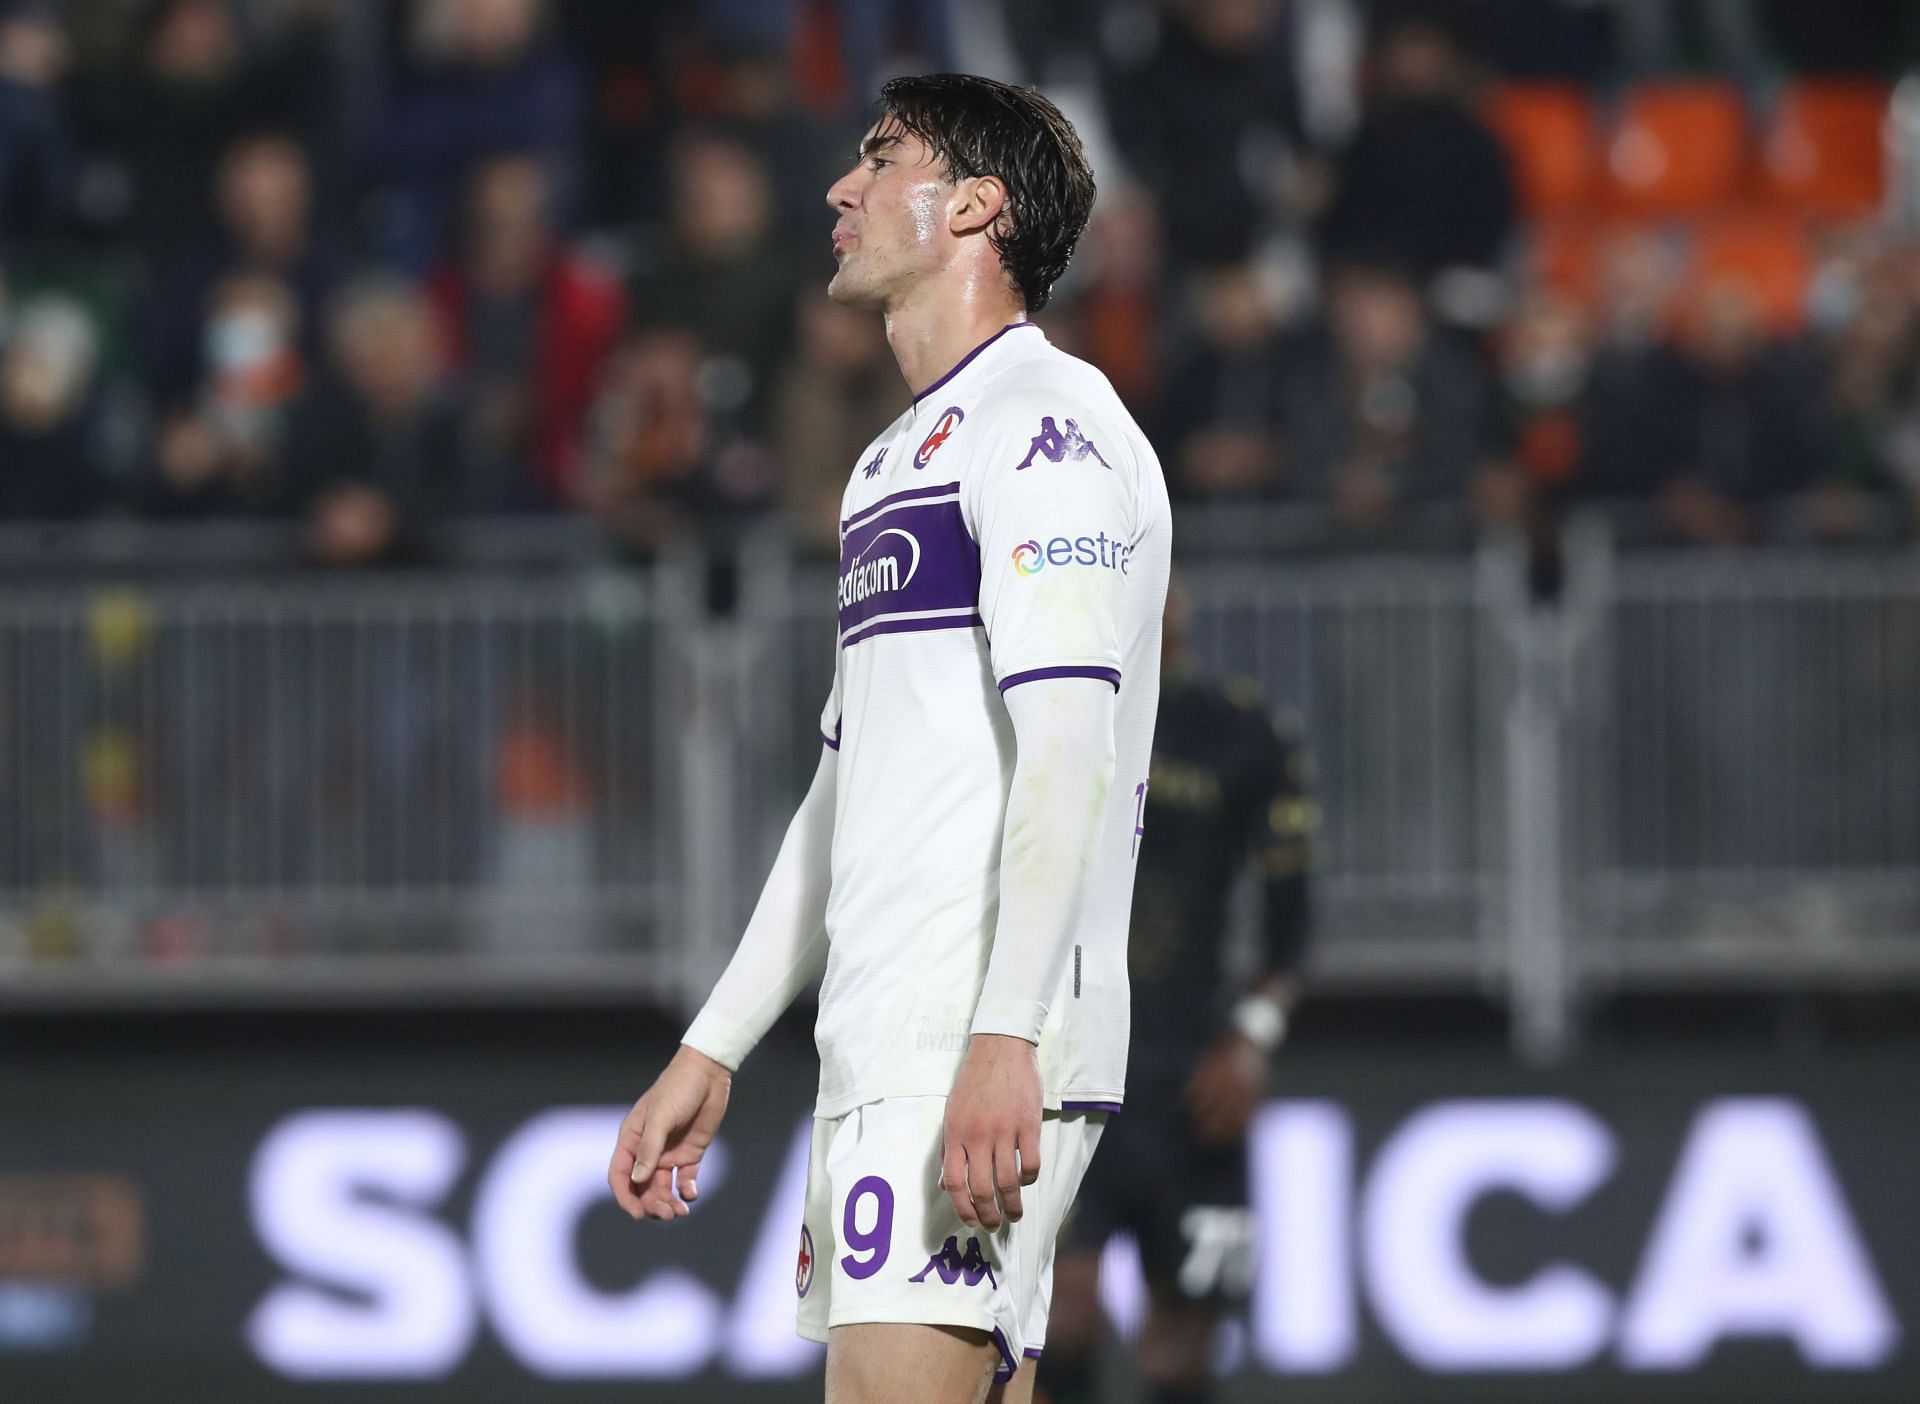 Fiorentina face Cagliari in their upcoming Serie A fixture